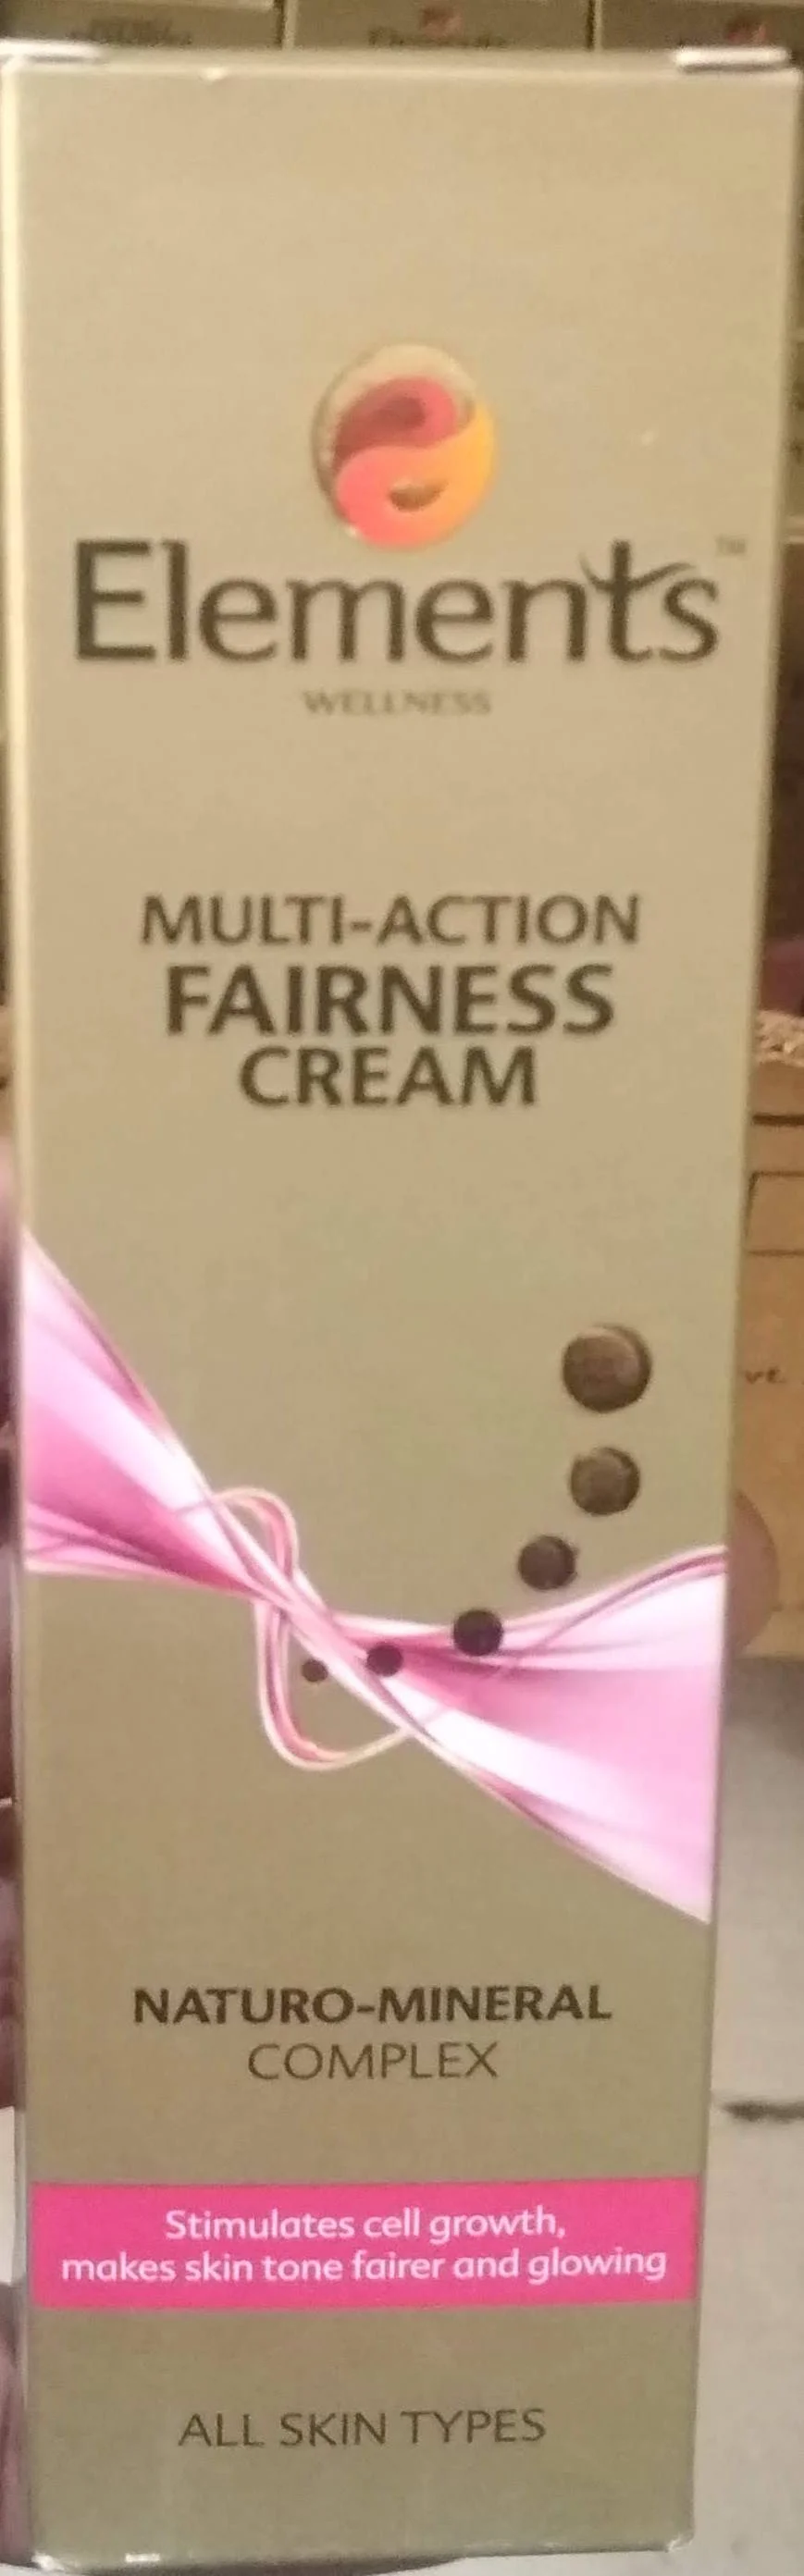 Multi action fairness formula 100gm element